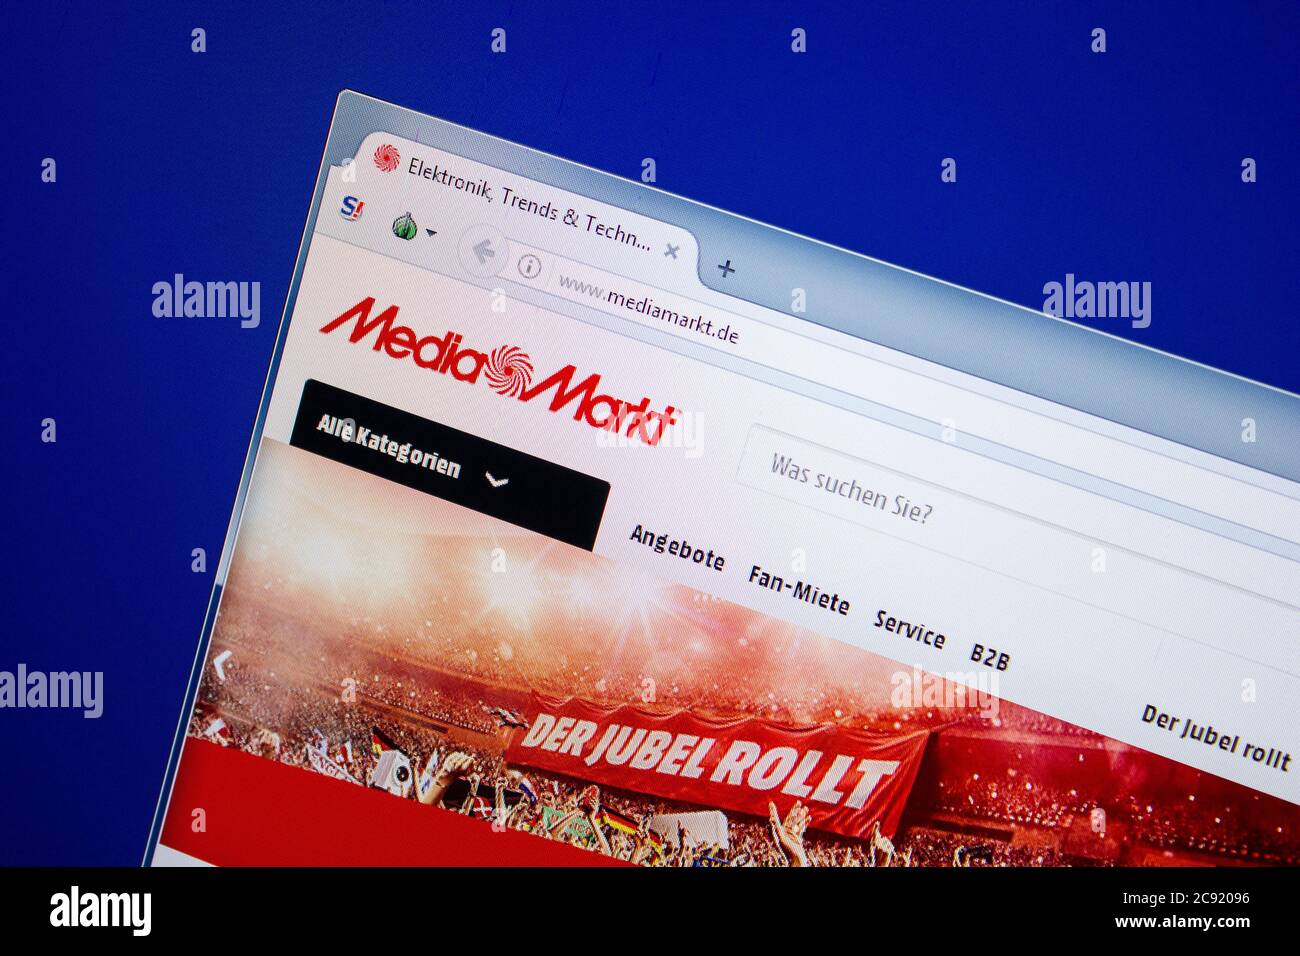 Ryazan, Russia - June 26, 2018: Homepage of Mediamarkt website on the  display of PC. URL - Mediamarkt.de Stock Photo - Alamy